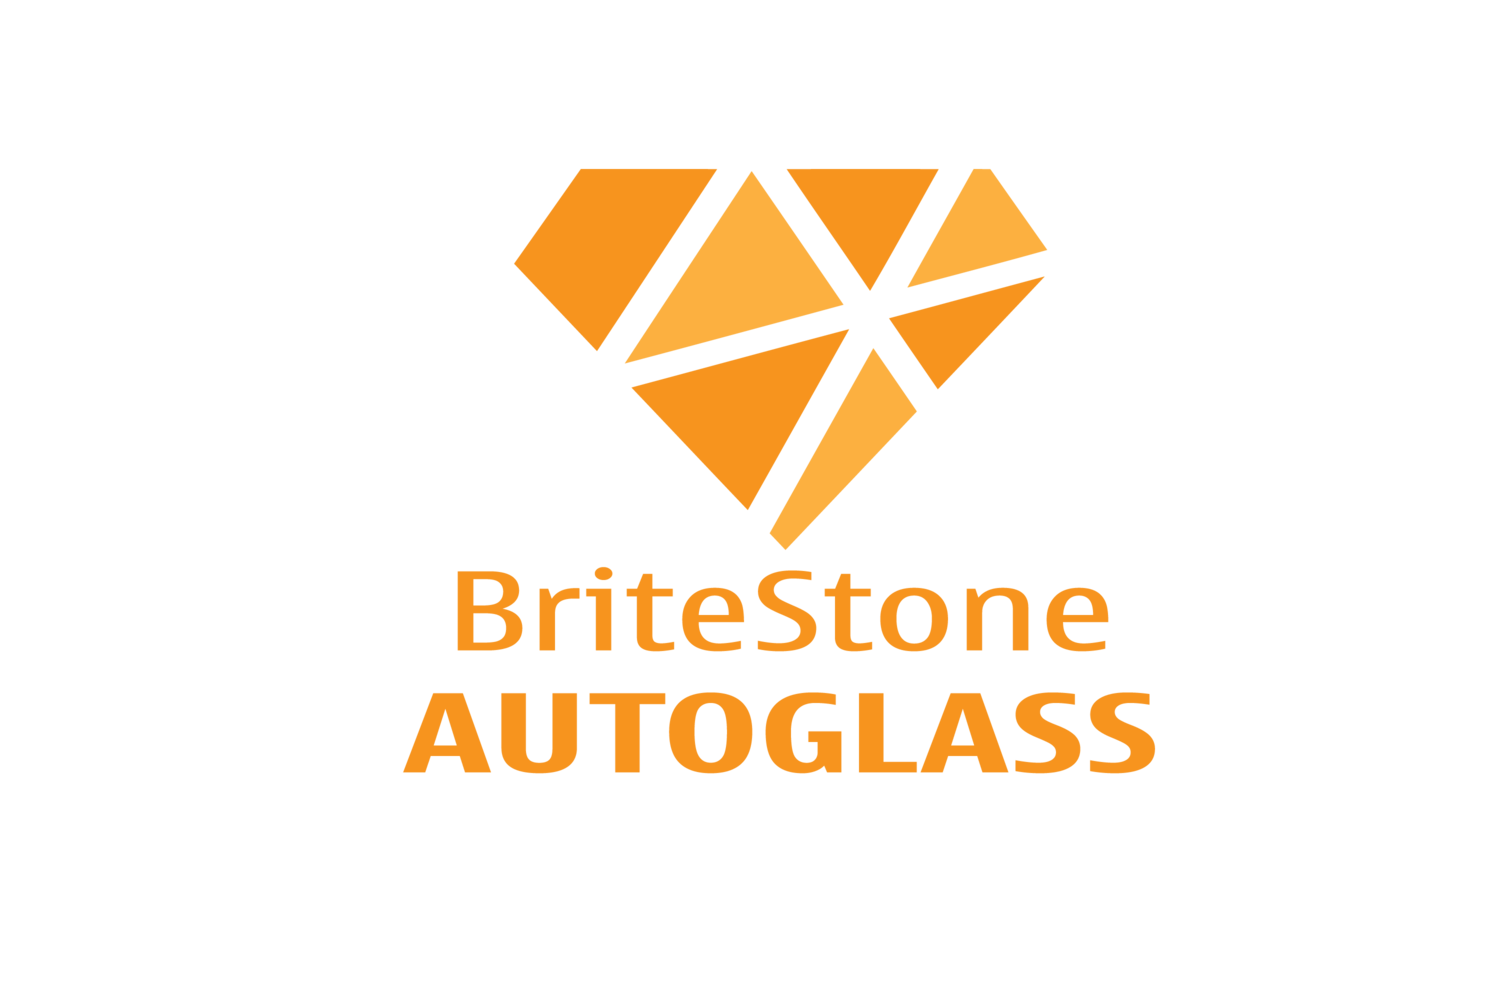 BriteStone Autoglass